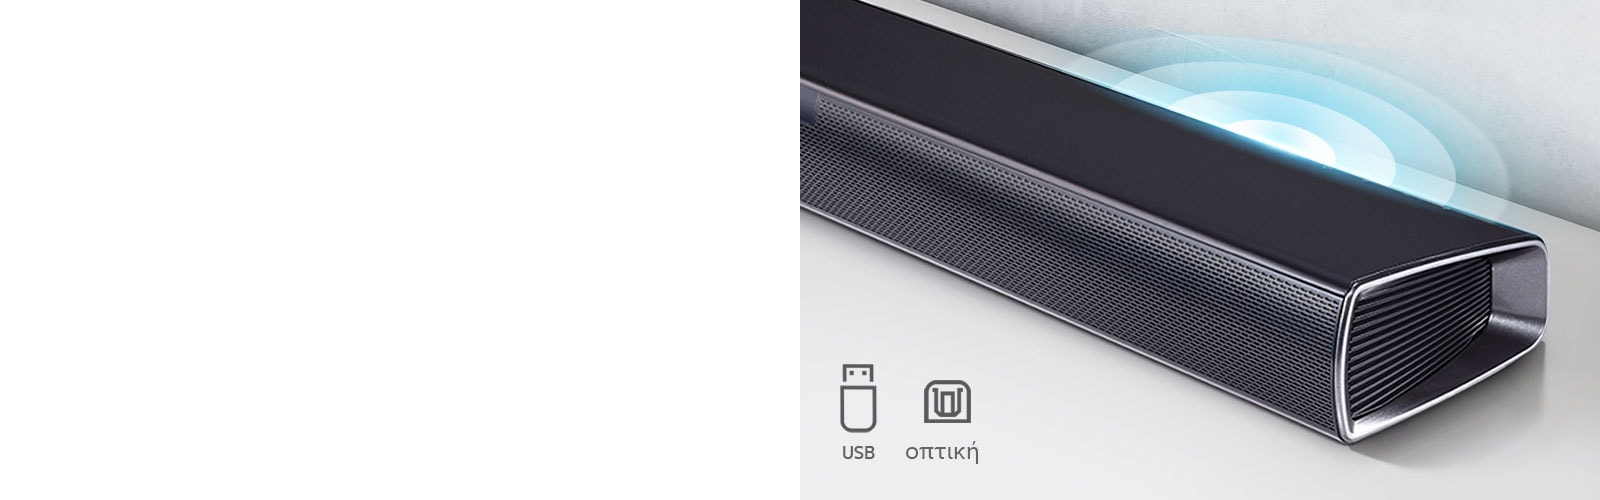 Το LG Sound Bar βρίσκεται στο λευκό ράφι. Το γραφικό του ήχου βγαίνει από το ηχείο. Δείχνει τα εικονίδια USB και Optical.